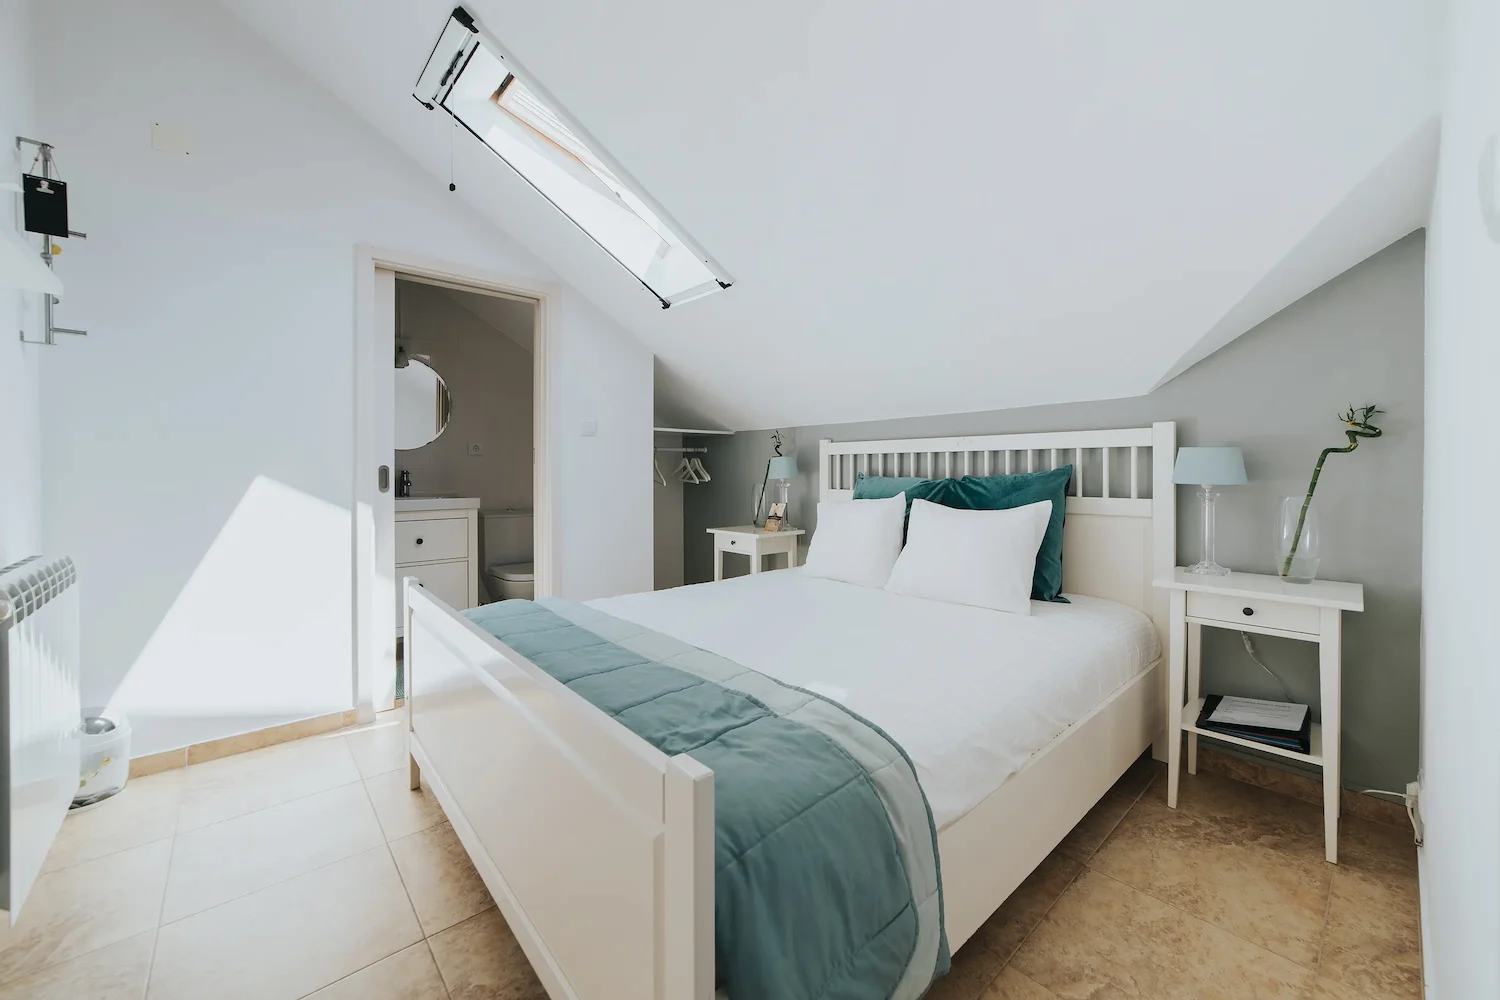 Num hotel na Guarda, podemos ver este quarto de casal radiando de luz natural. Com uma apresentação limpa e mobiliário minimalista, é o tipo de imagem perfeita que só um fotógrafo especializado hotelaria consegue produzir.